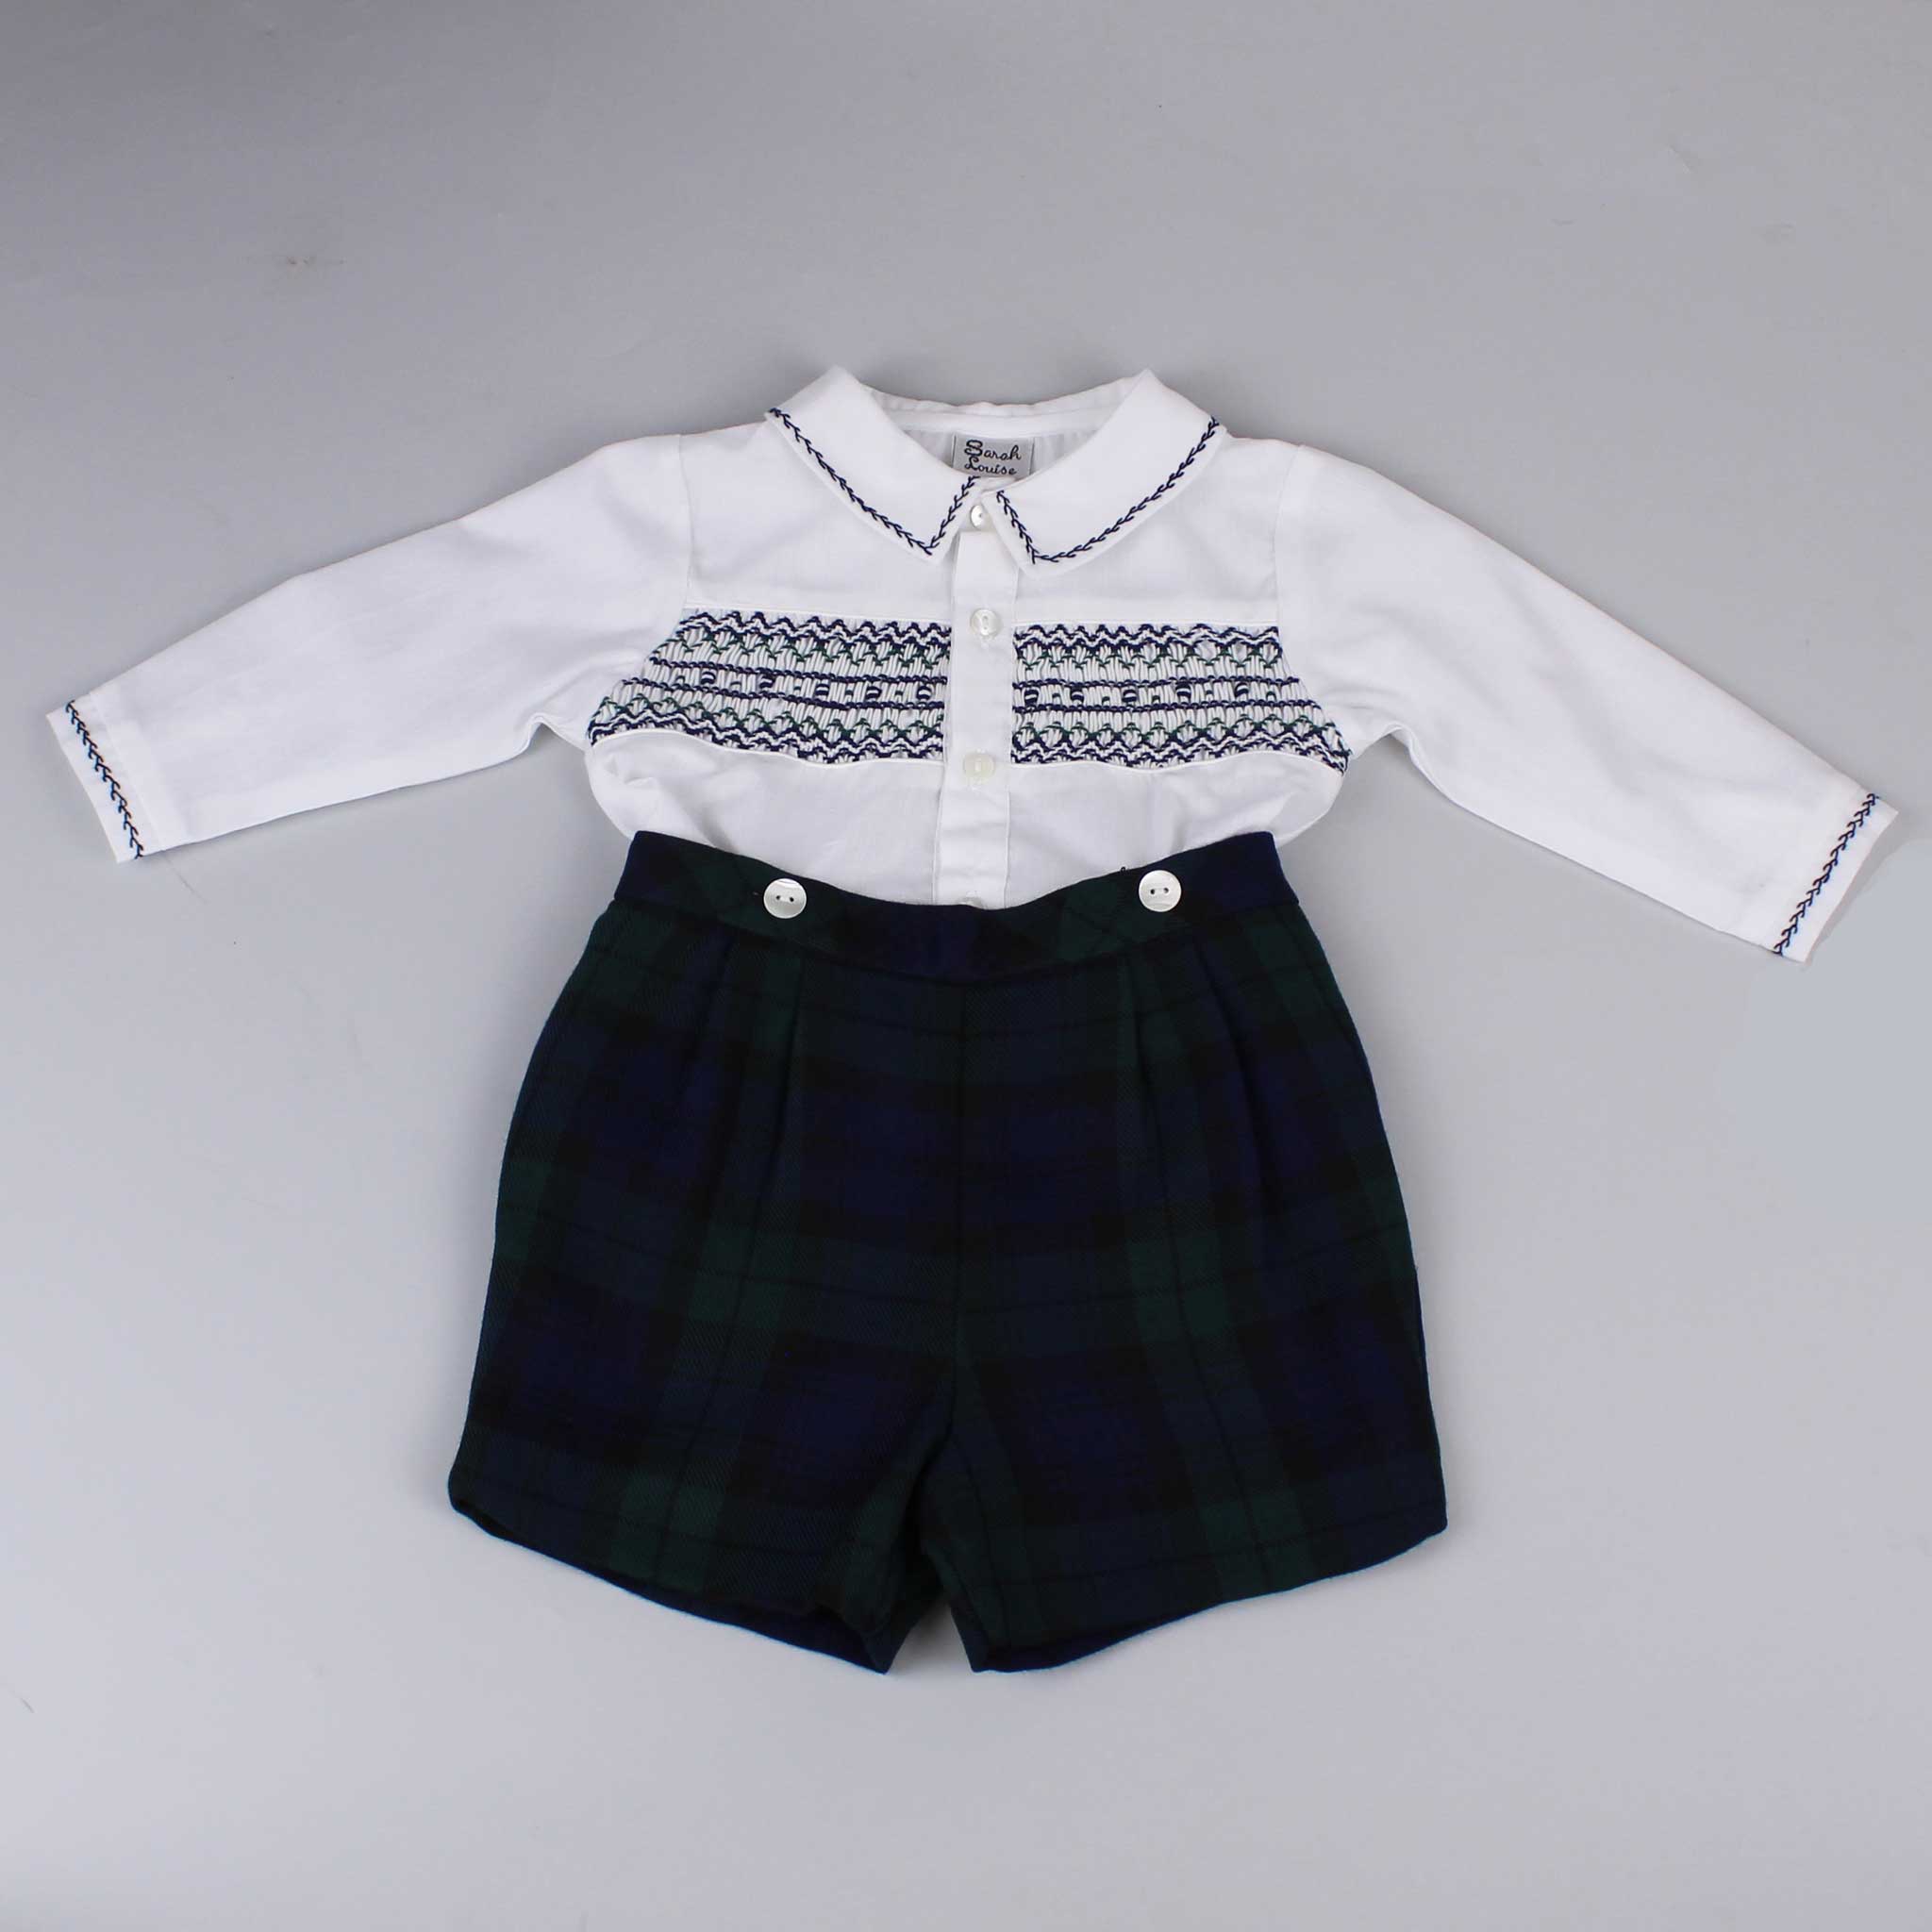 Baby Boys 2 Piece Tartan Shorts and Shirt Outfit - Sarah Louise 012855